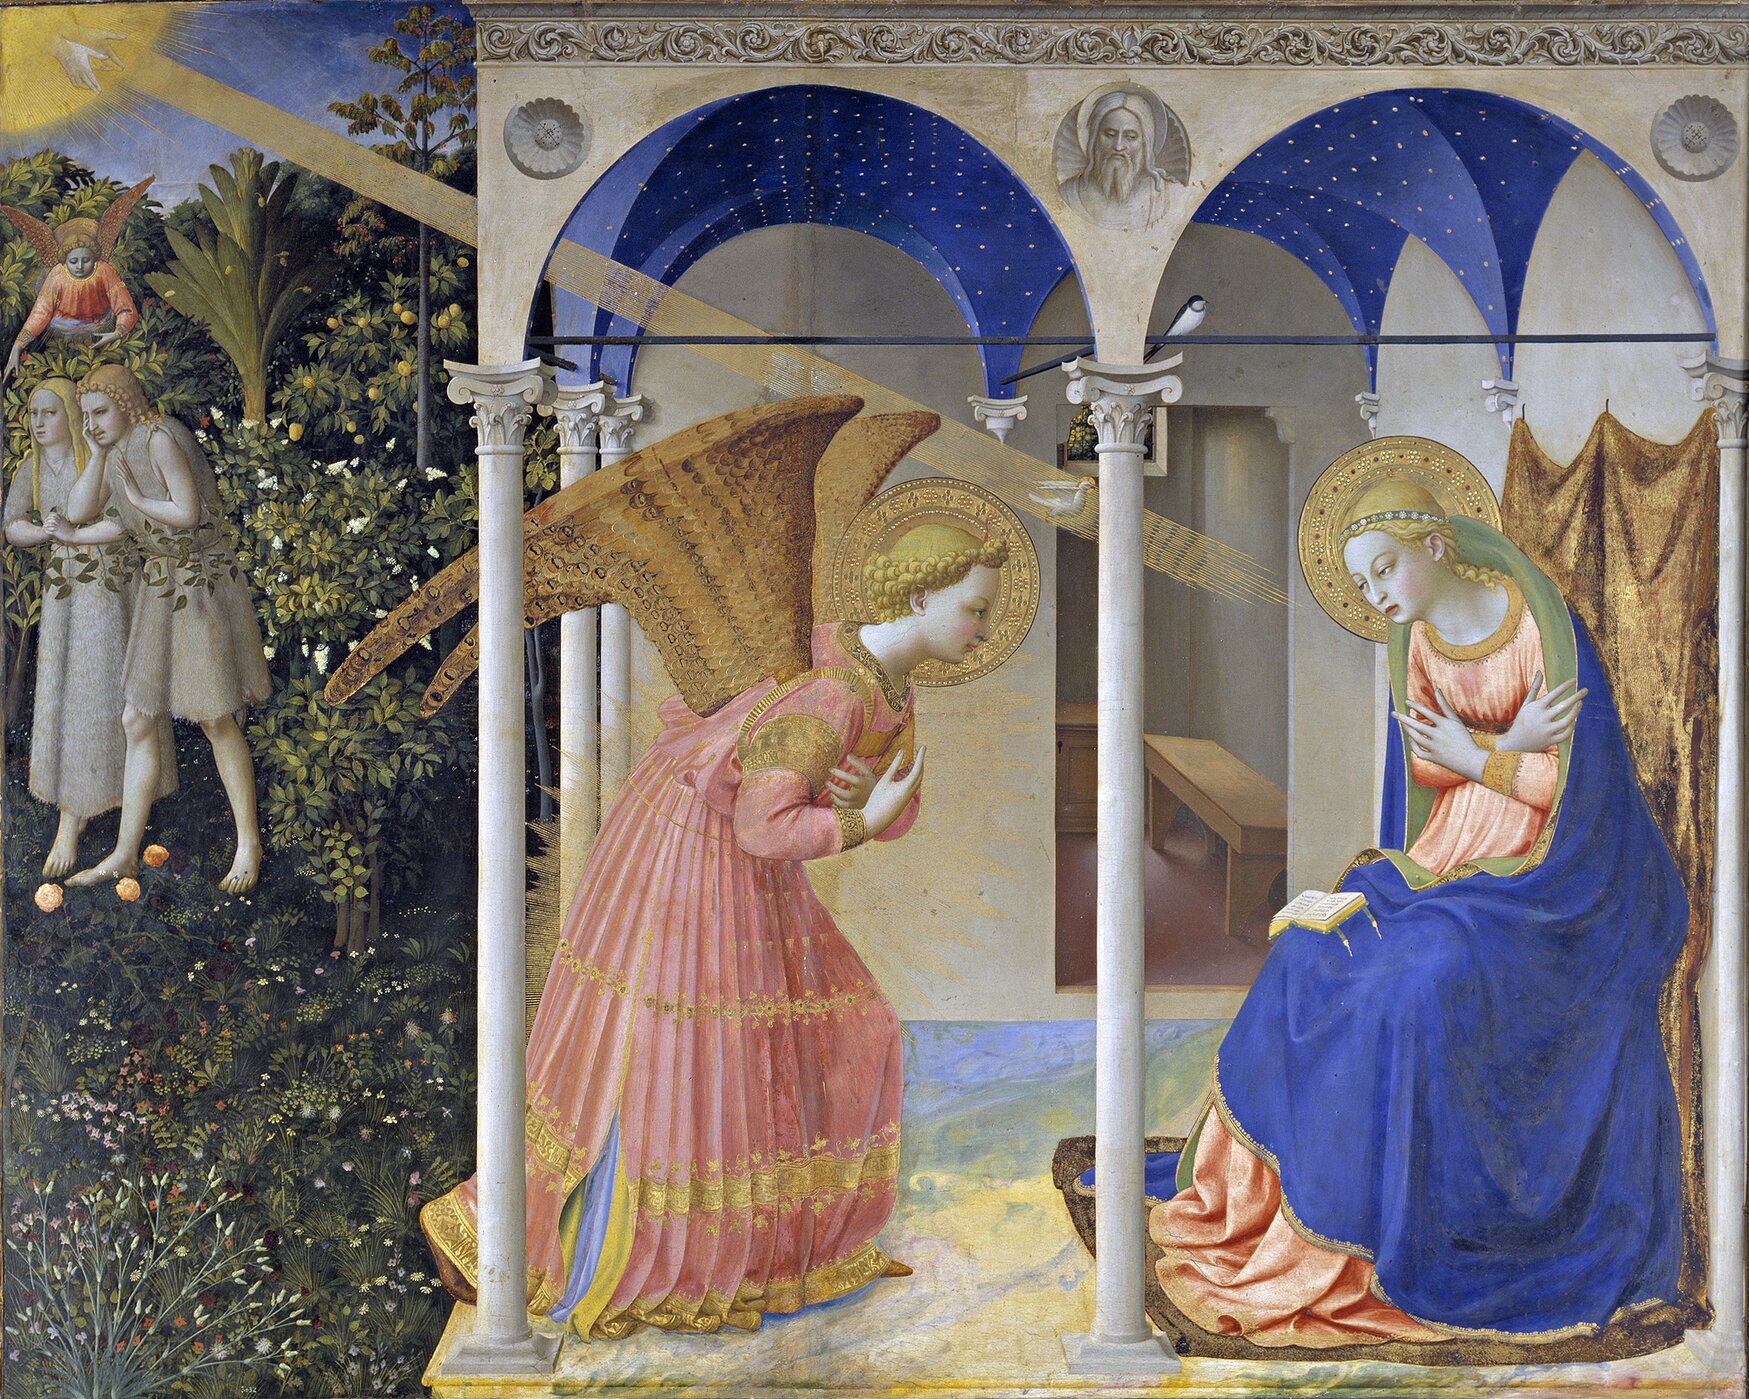 Obraz przedstawia młodą kobietę siedzącą na krużganku domu. Przed kobietą przyklęka anioł. Na kobietę pada z nieba jasny promień słońca, wskazując ją.